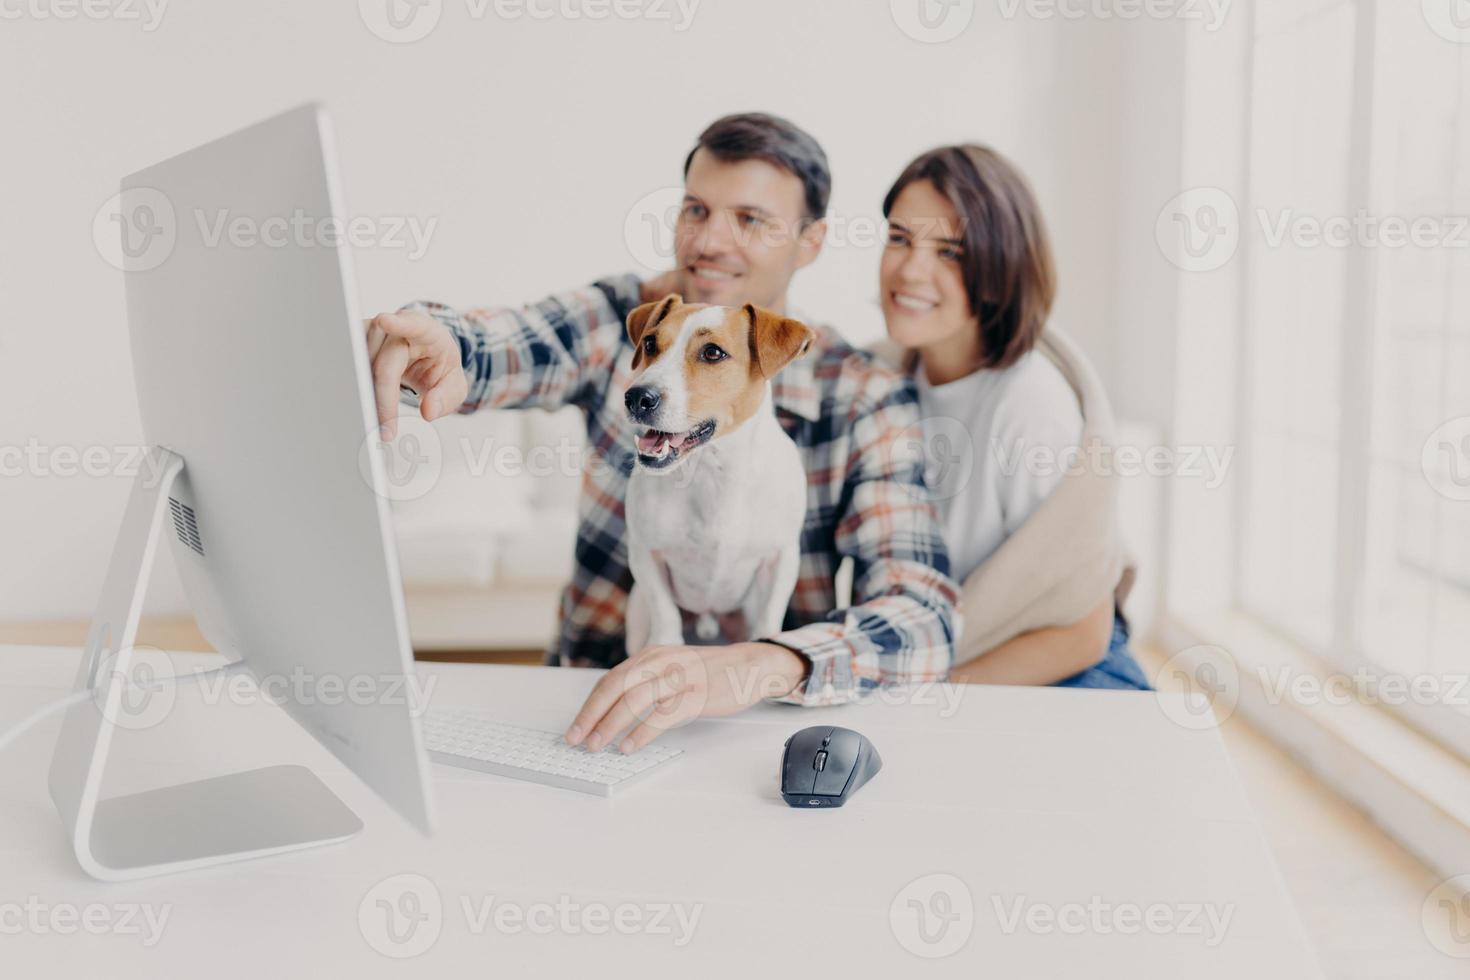 jovem e homem satisfeitos assistem ao conteúdo do computador